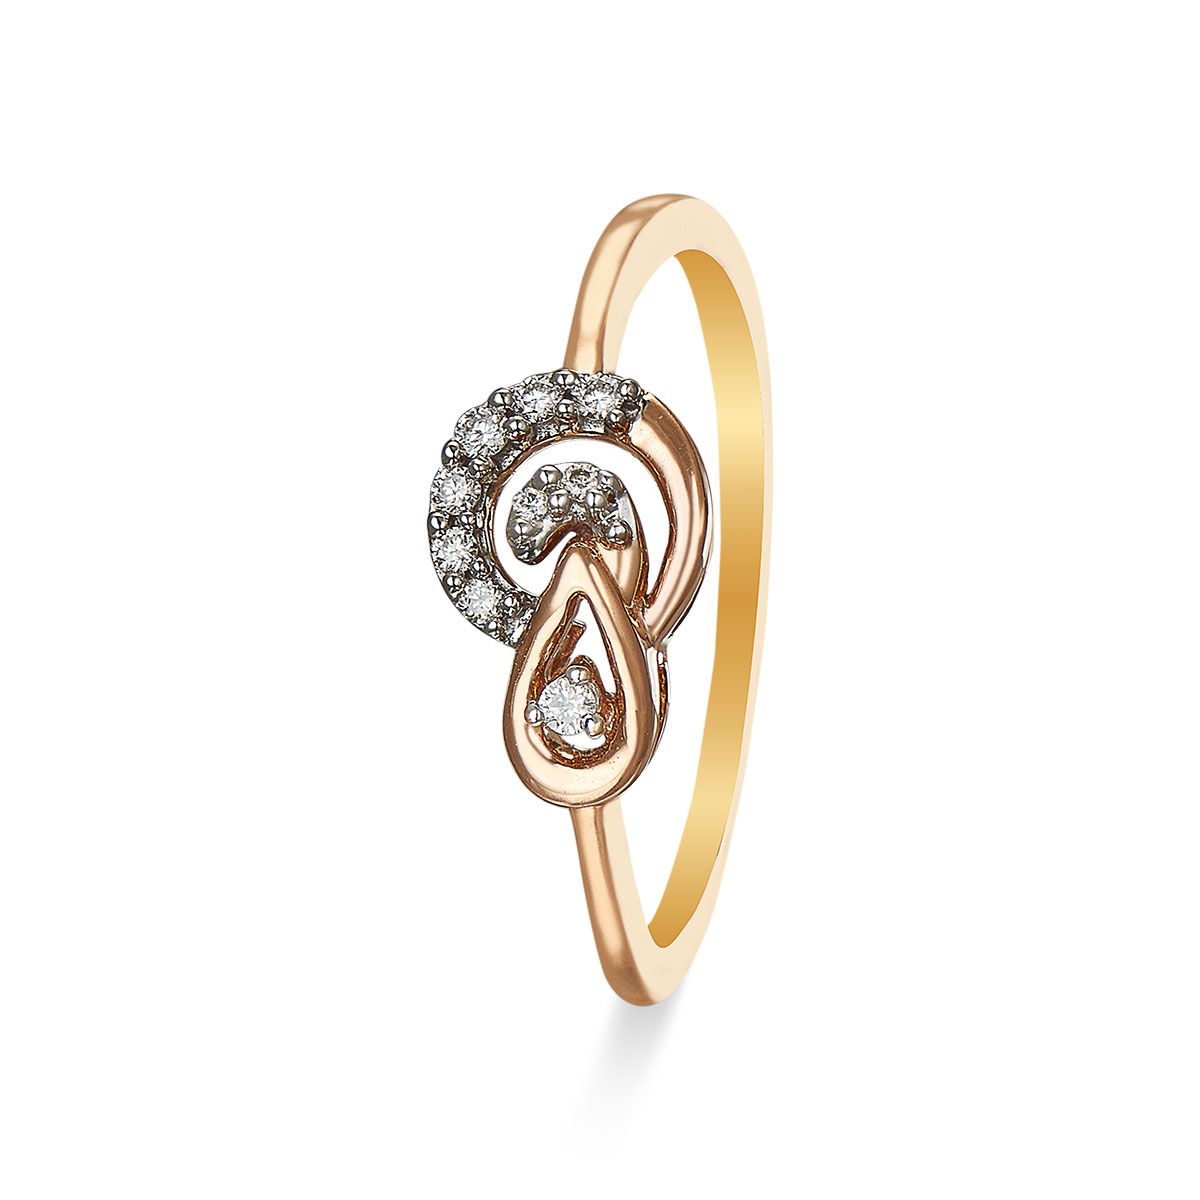 Buy Elegant Diamond Ring | kasturidiamond